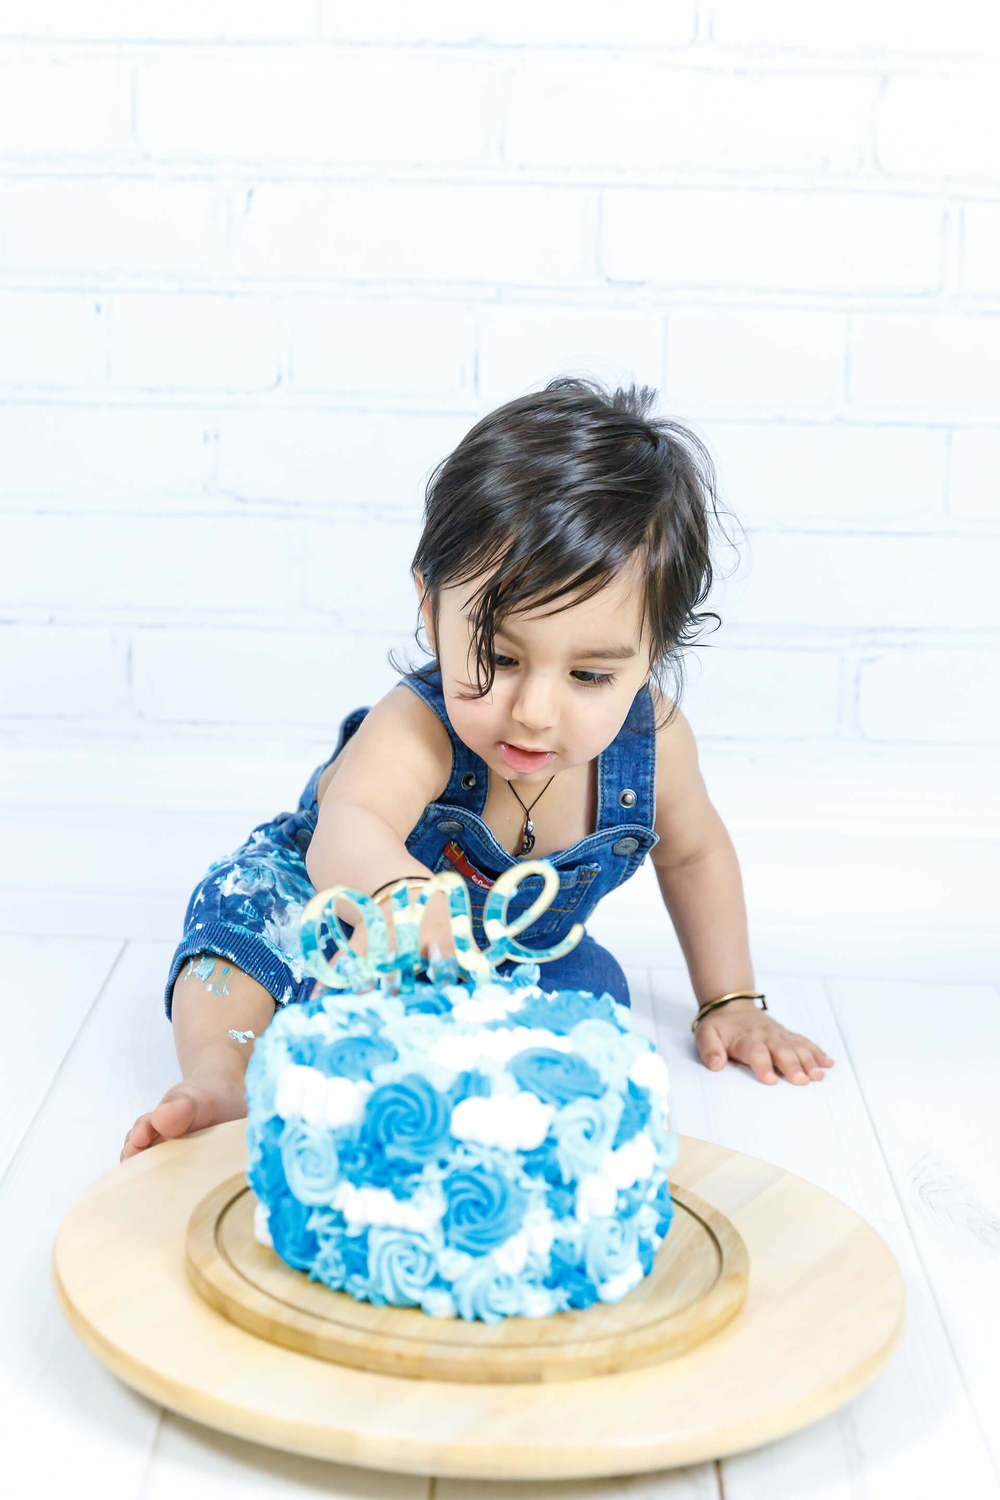 Cake Smash - Baby Photography UAE